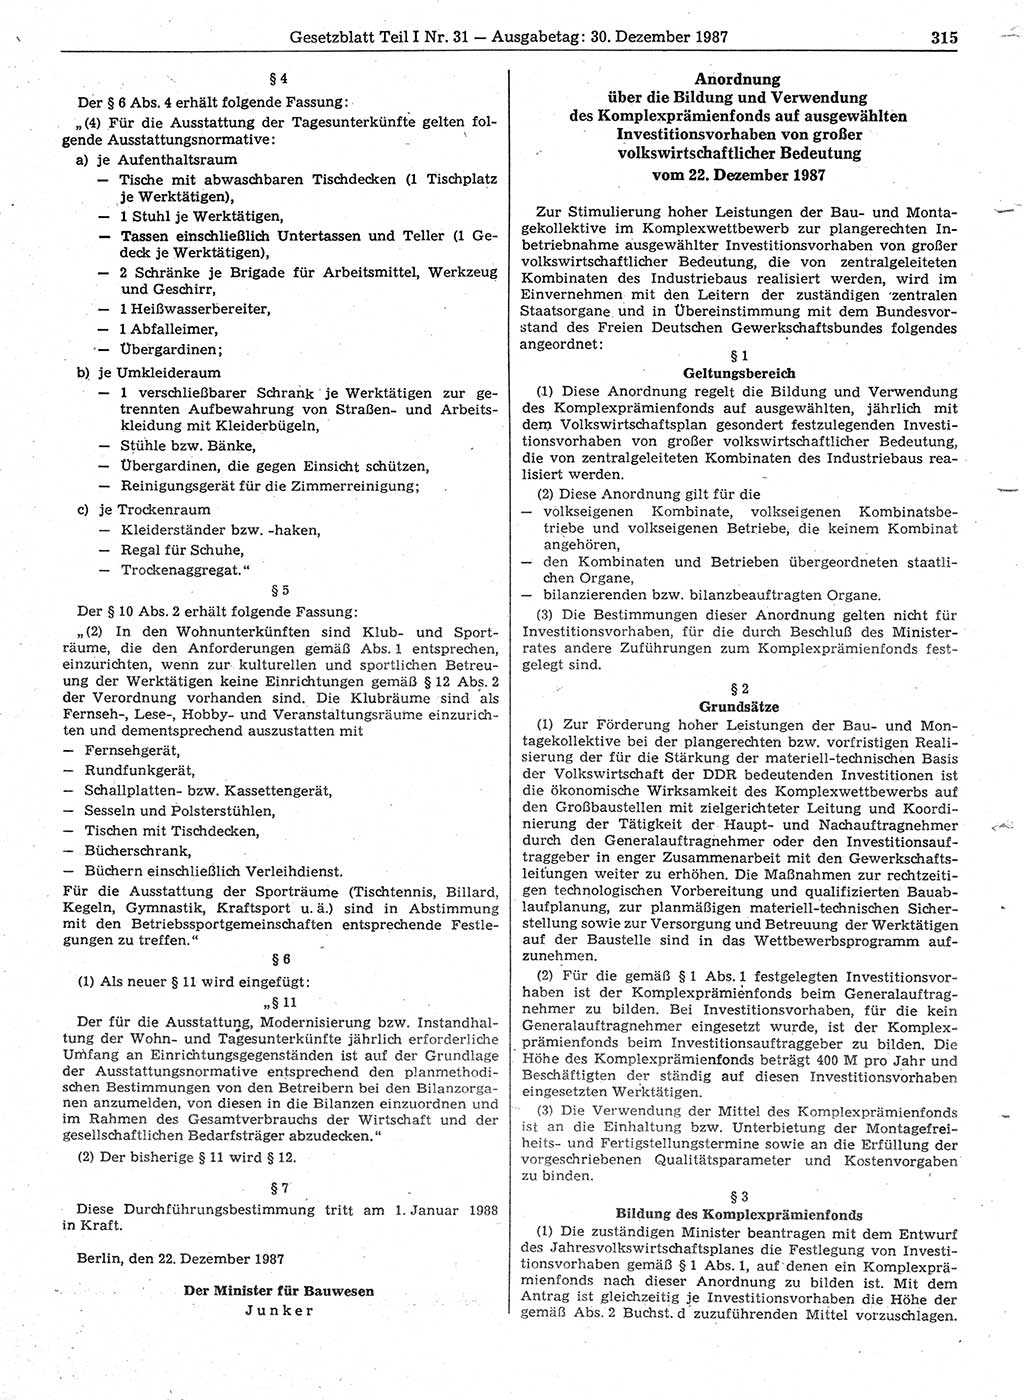 Gesetzblatt (GBl.) der Deutschen Demokratischen Republik (DDR) Teil Ⅰ 1987, Seite 315 (GBl. DDR Ⅰ 1987, S. 315)